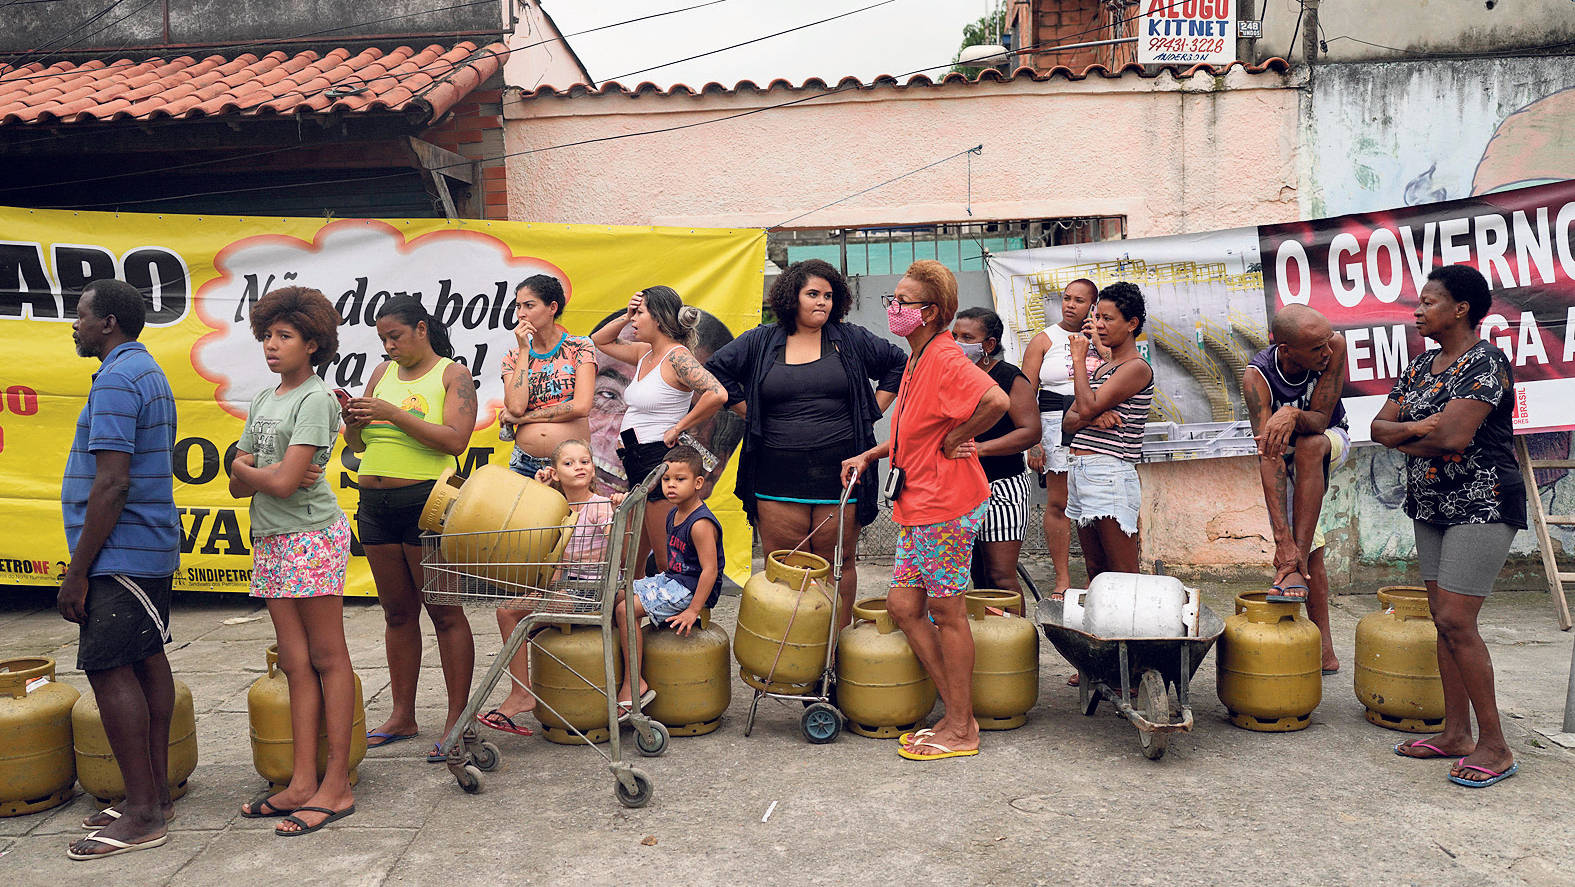 תושבים בתור למילוי בלוני הגז ריו דה ז'ניירו ברזיל